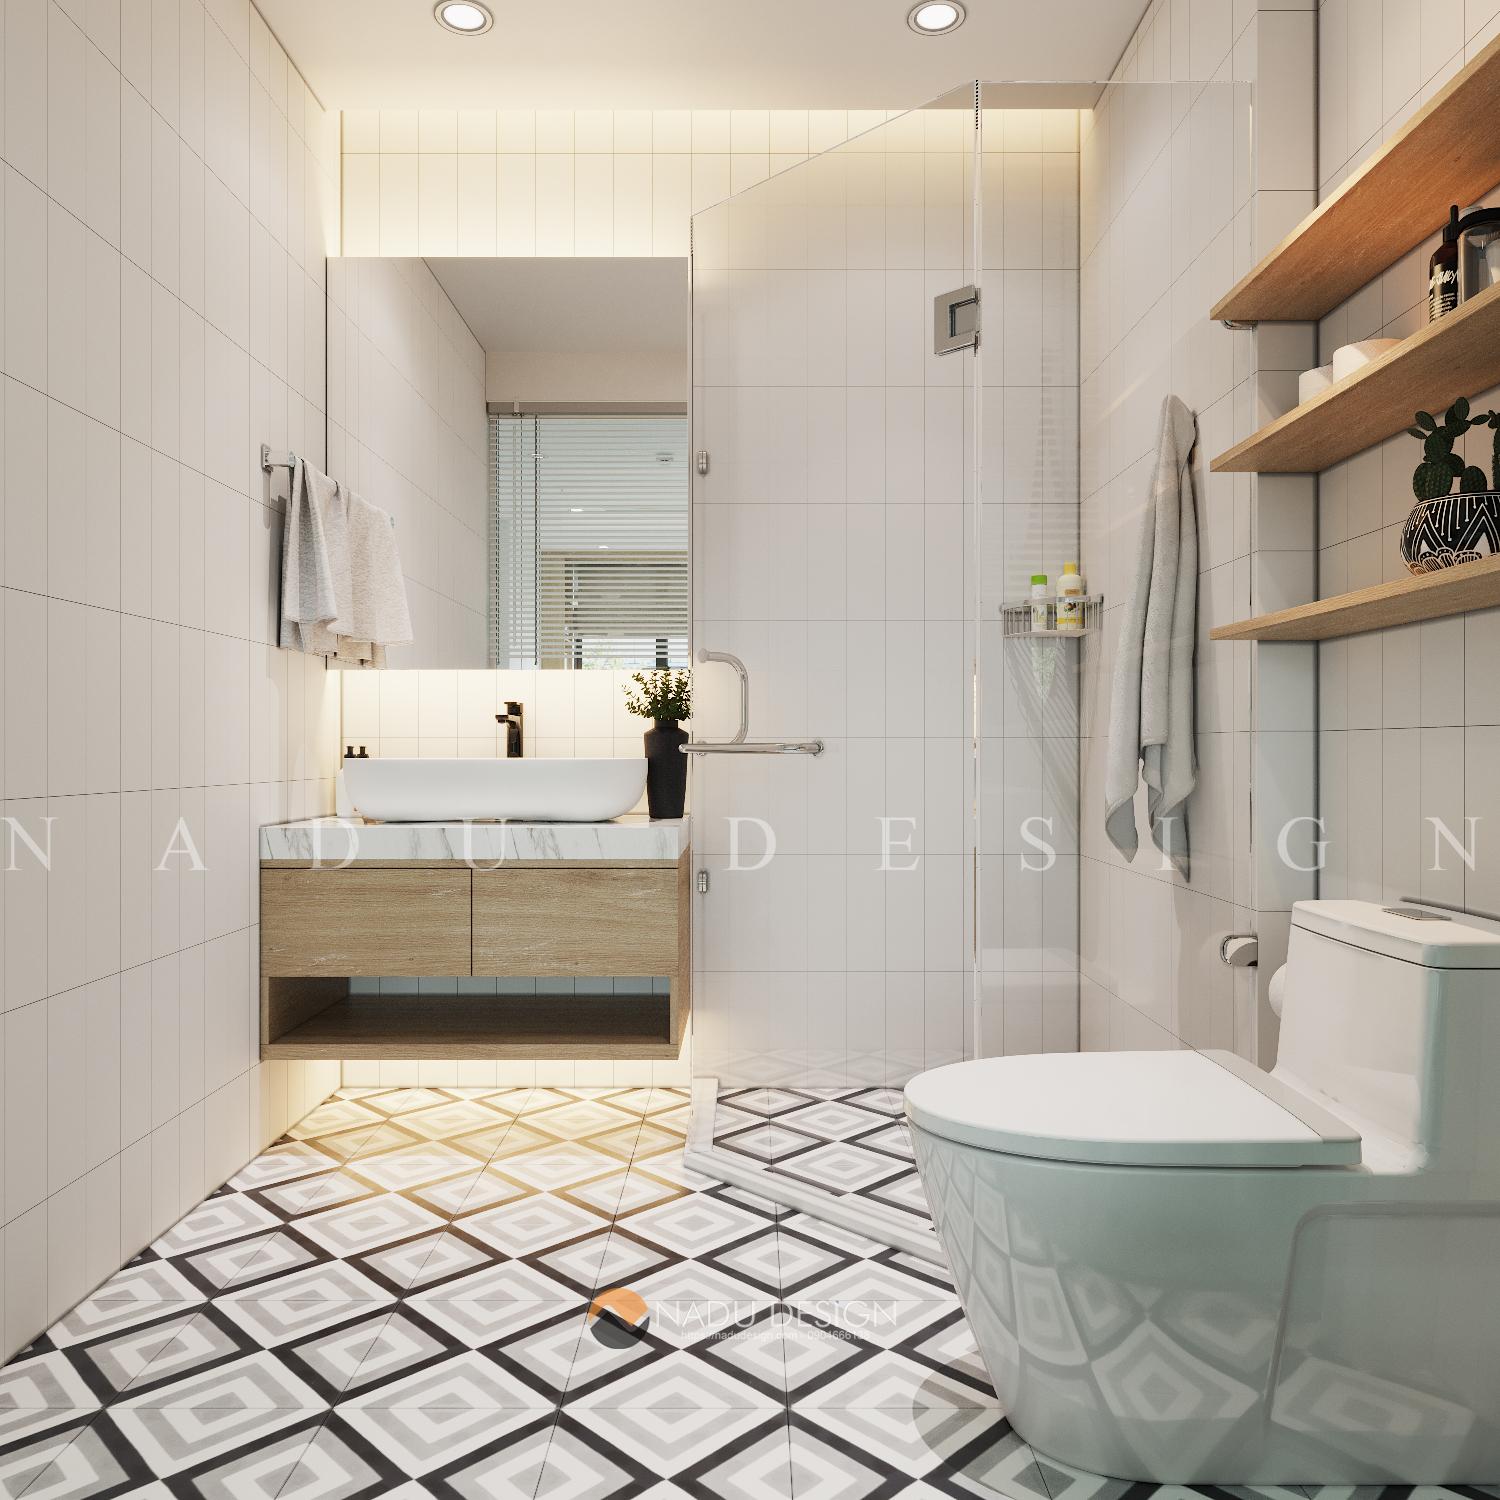 Với thiết kế phòng tắm 4m2 sang trọng, Bộ phận kiến trúc của chúng tôi cam kết sẽ tạo ra cho bạn không gian một phòng tắm tiện nghi, đầy sang trọng và đẳng cấp như trong khách sạn 5 sao. Không gian nhỏ cũng không còn là rào cản cho những kế hoạch của bạn.